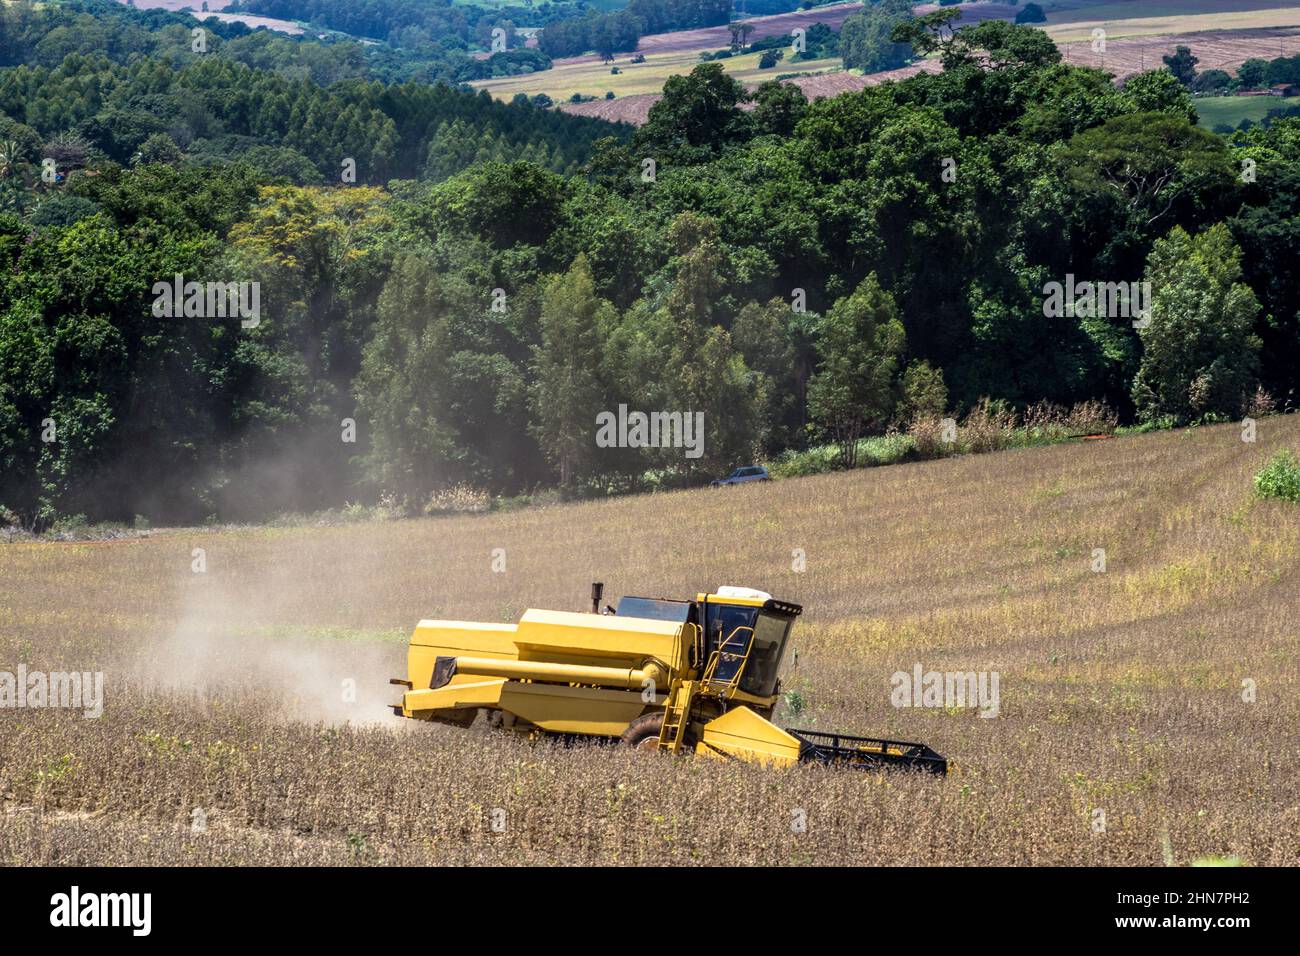 Récolte mécanisée de soja sur une ferme au Brésil Banque D'Images